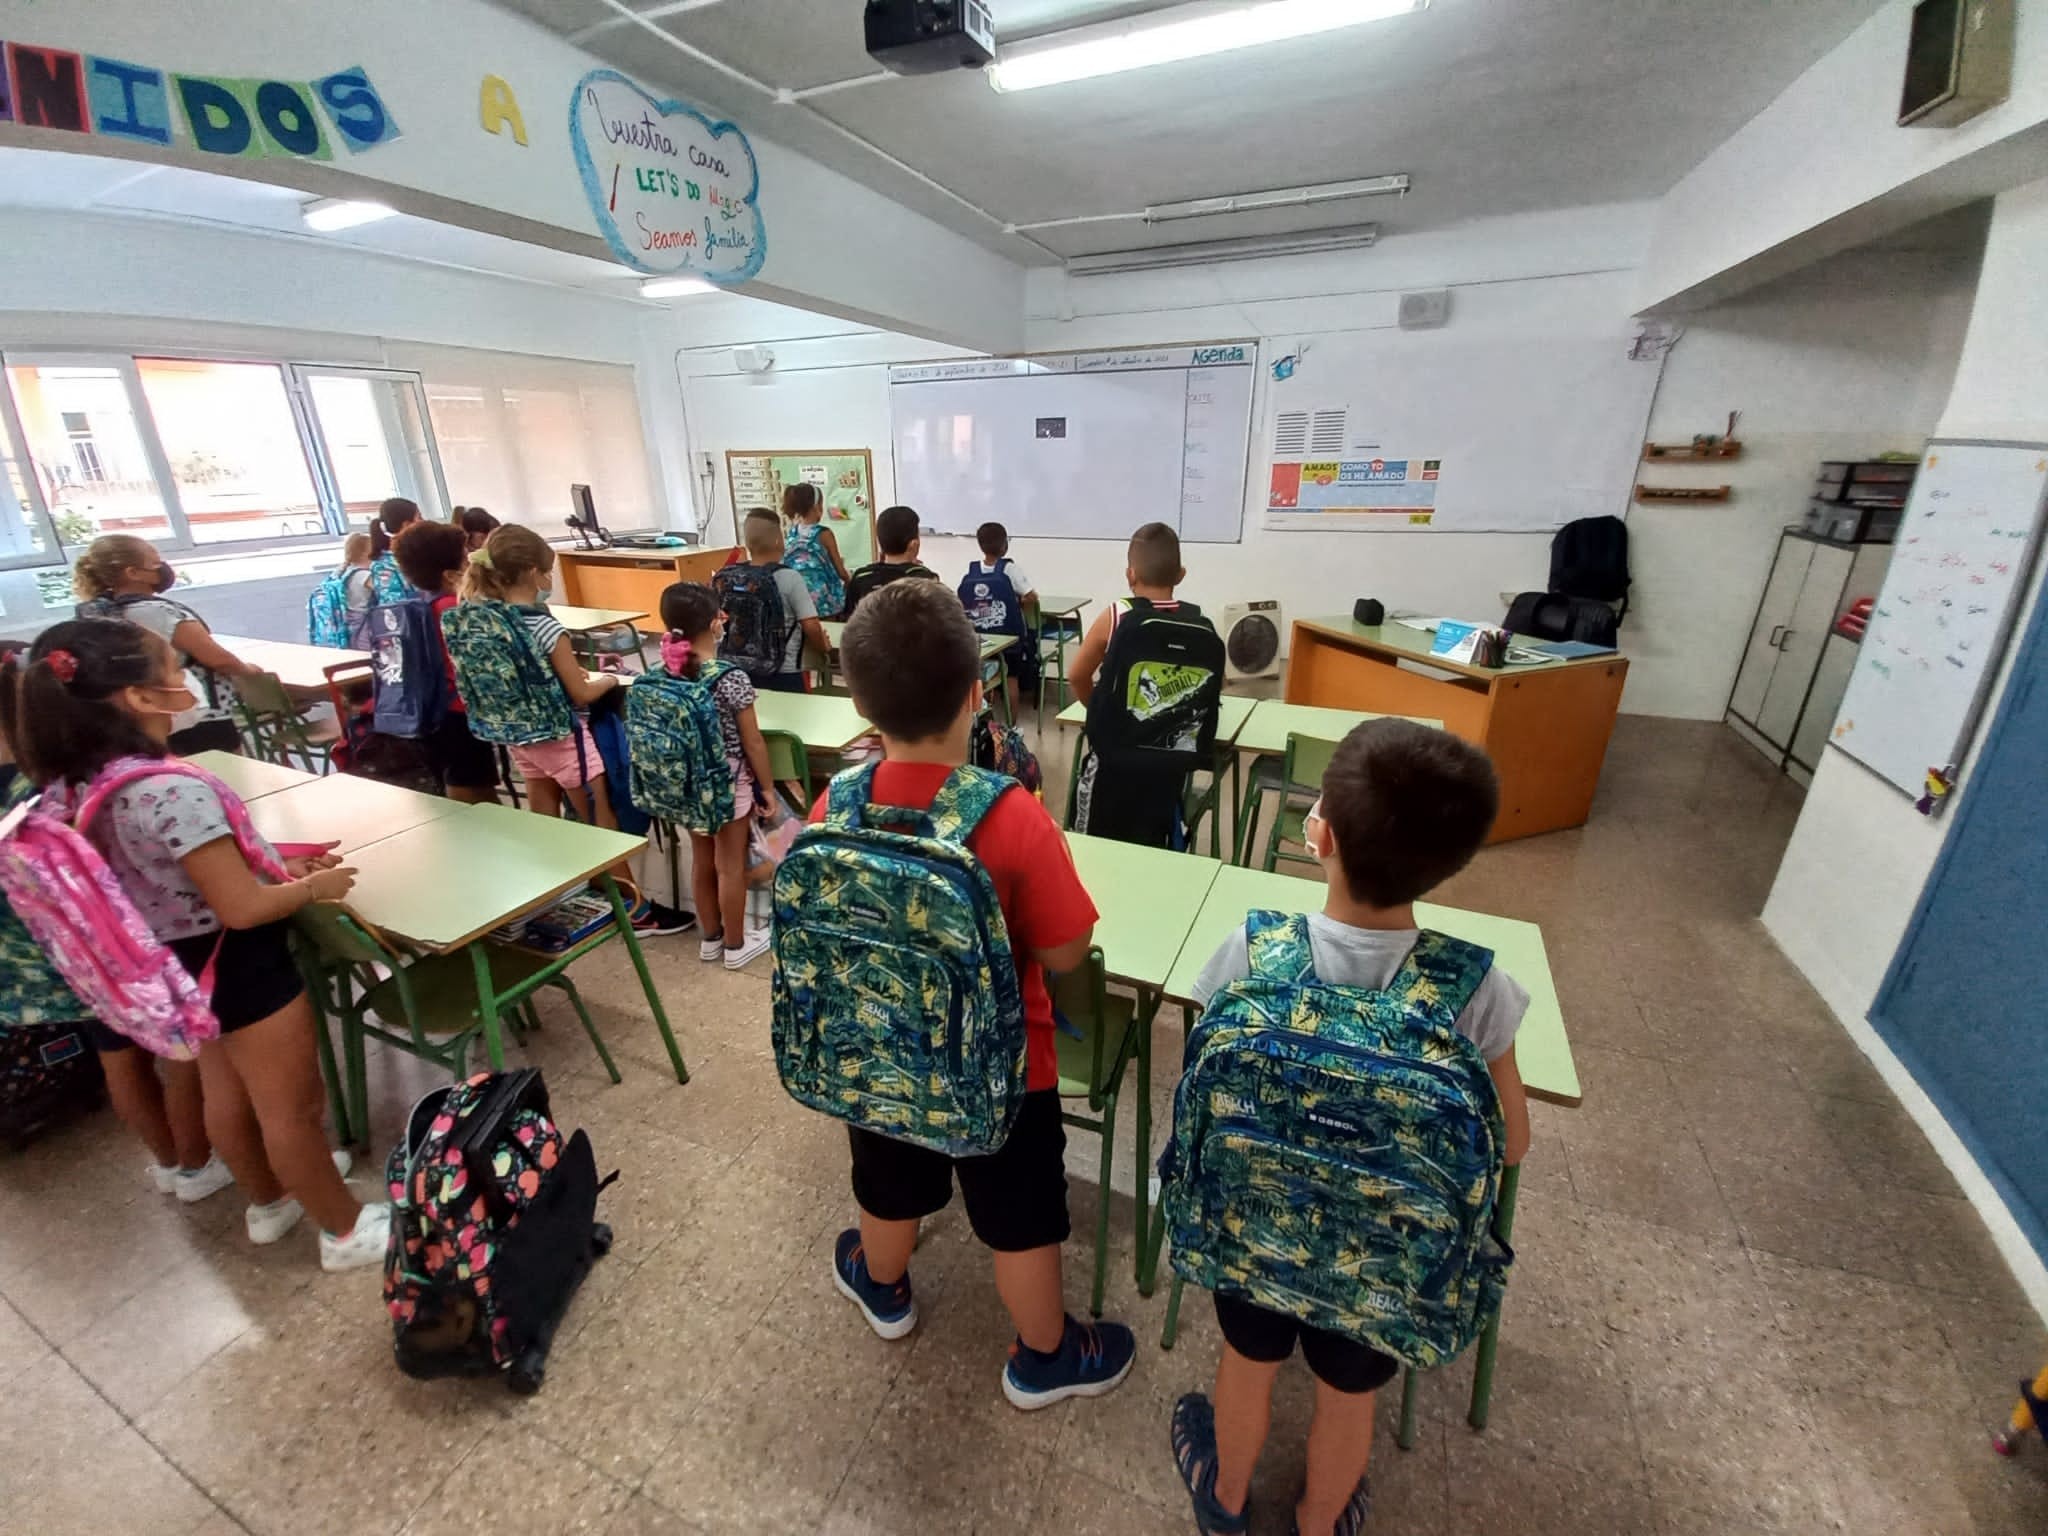 Gabol dona 200 mochilas escolares al colegio Ntra. Sra. Desamparados de Nazaret